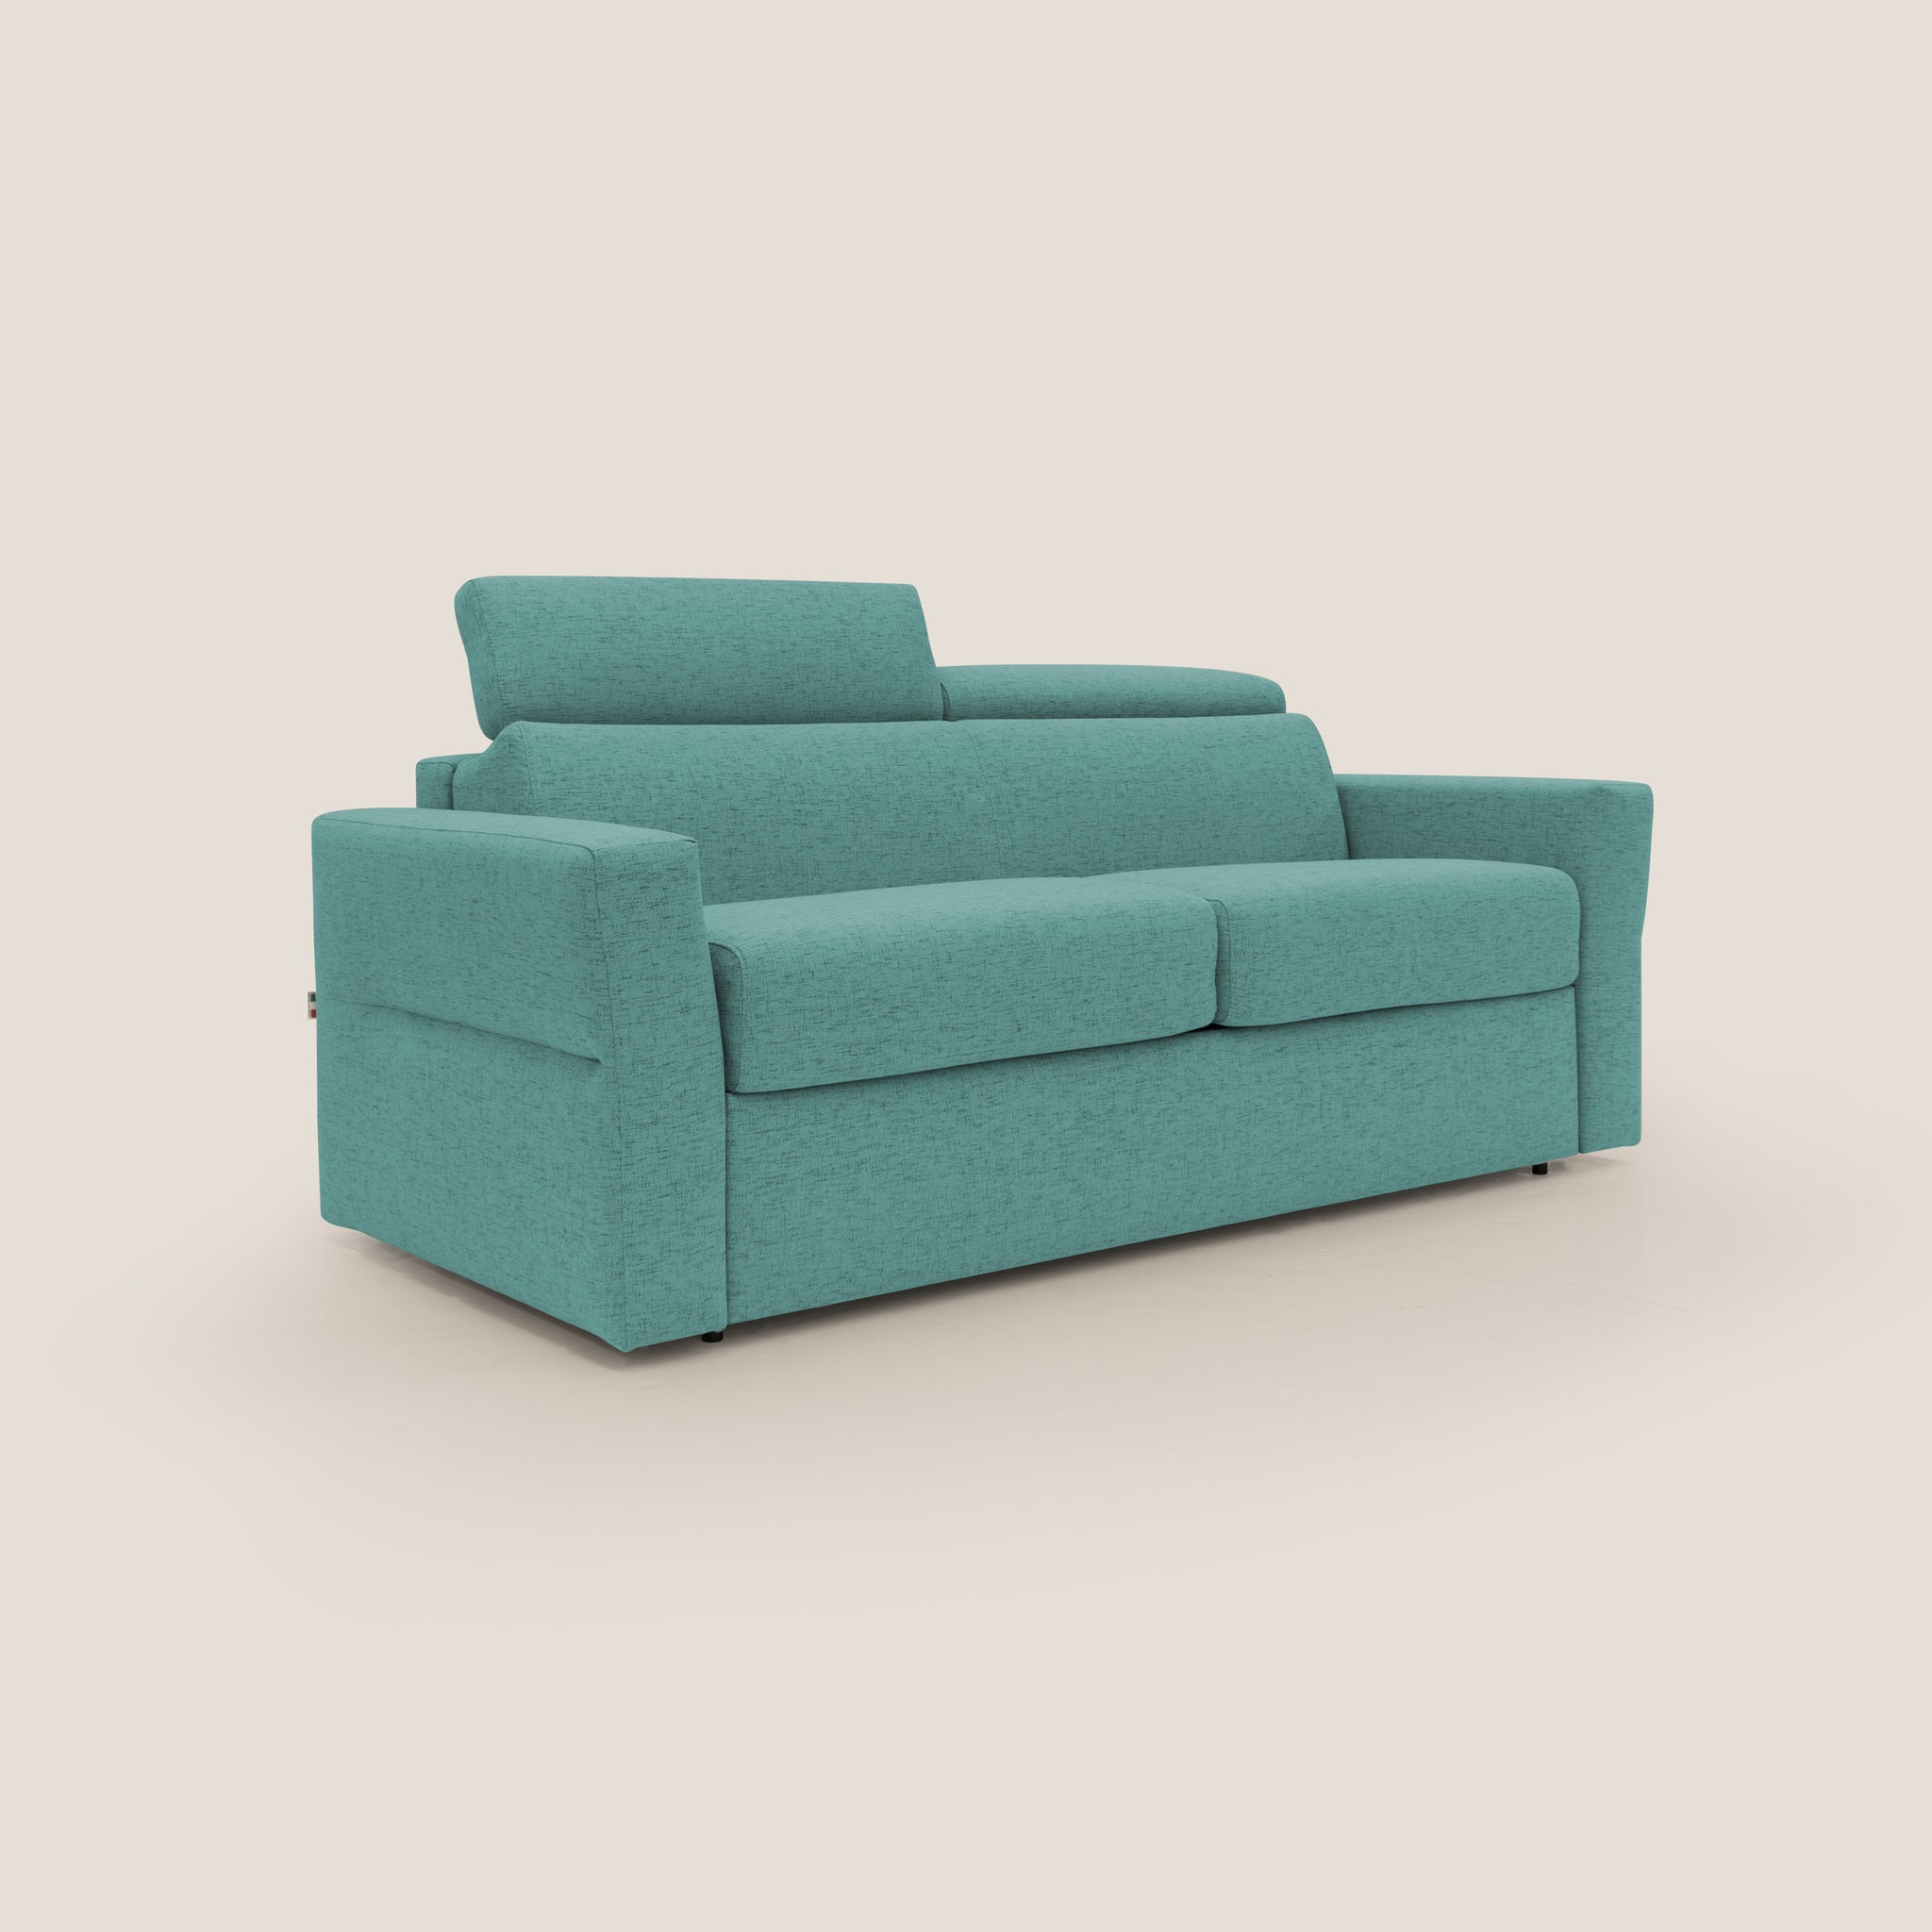 Avalon divano letto con materasso alto 18 cm in tessuto impermeabile T03